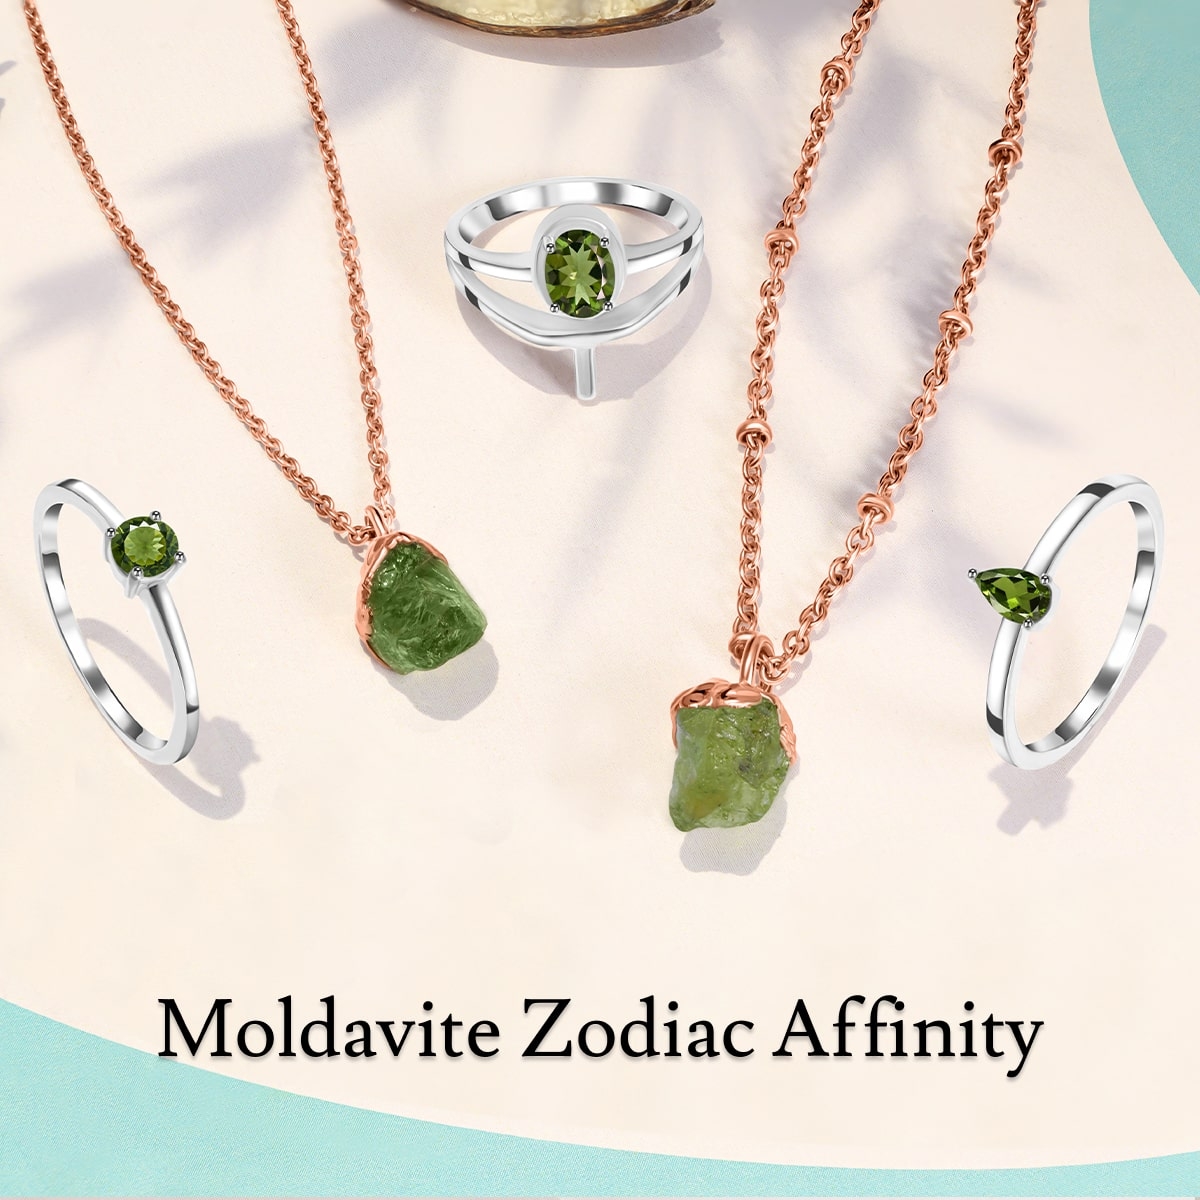 Moldavite Zodiac sign